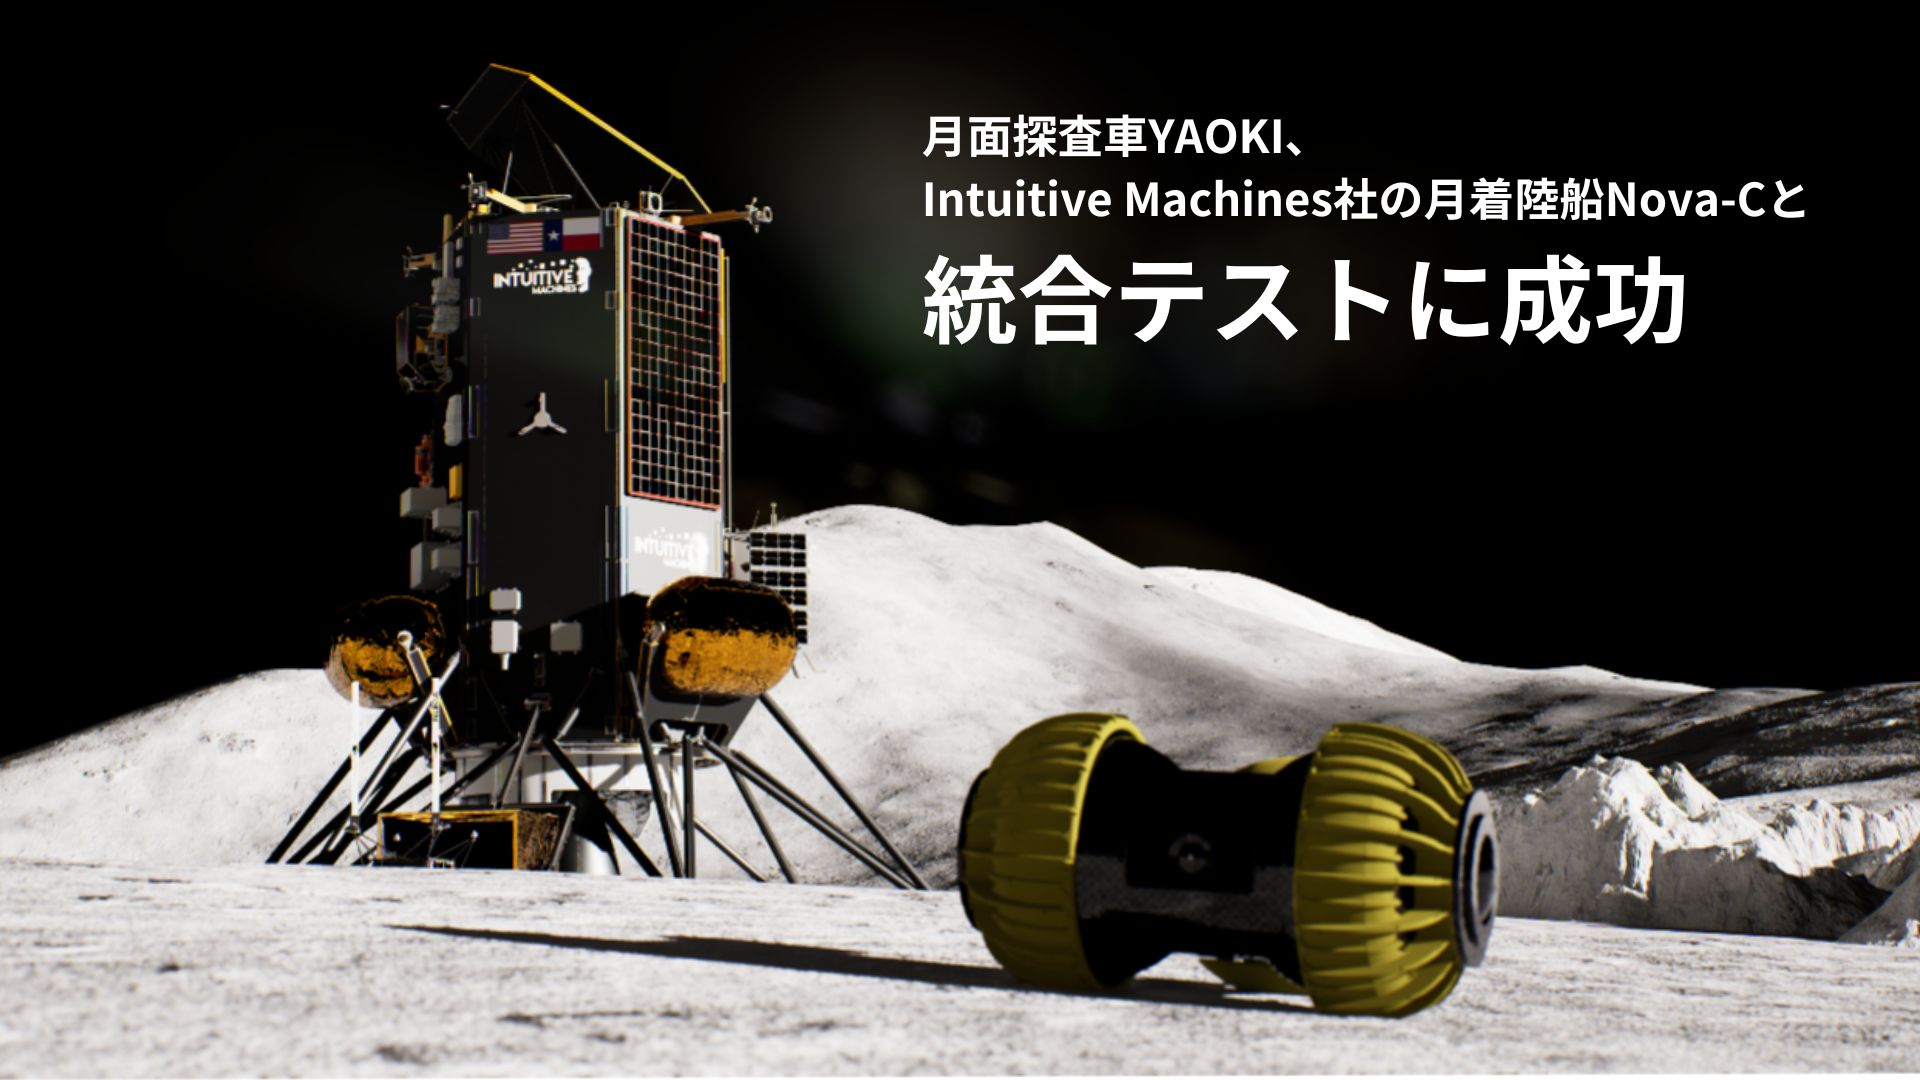 月面探査車YAOKI、Intuitive Machines社の月着陸船Nova-Cと統合テストに成功 | YAOKI